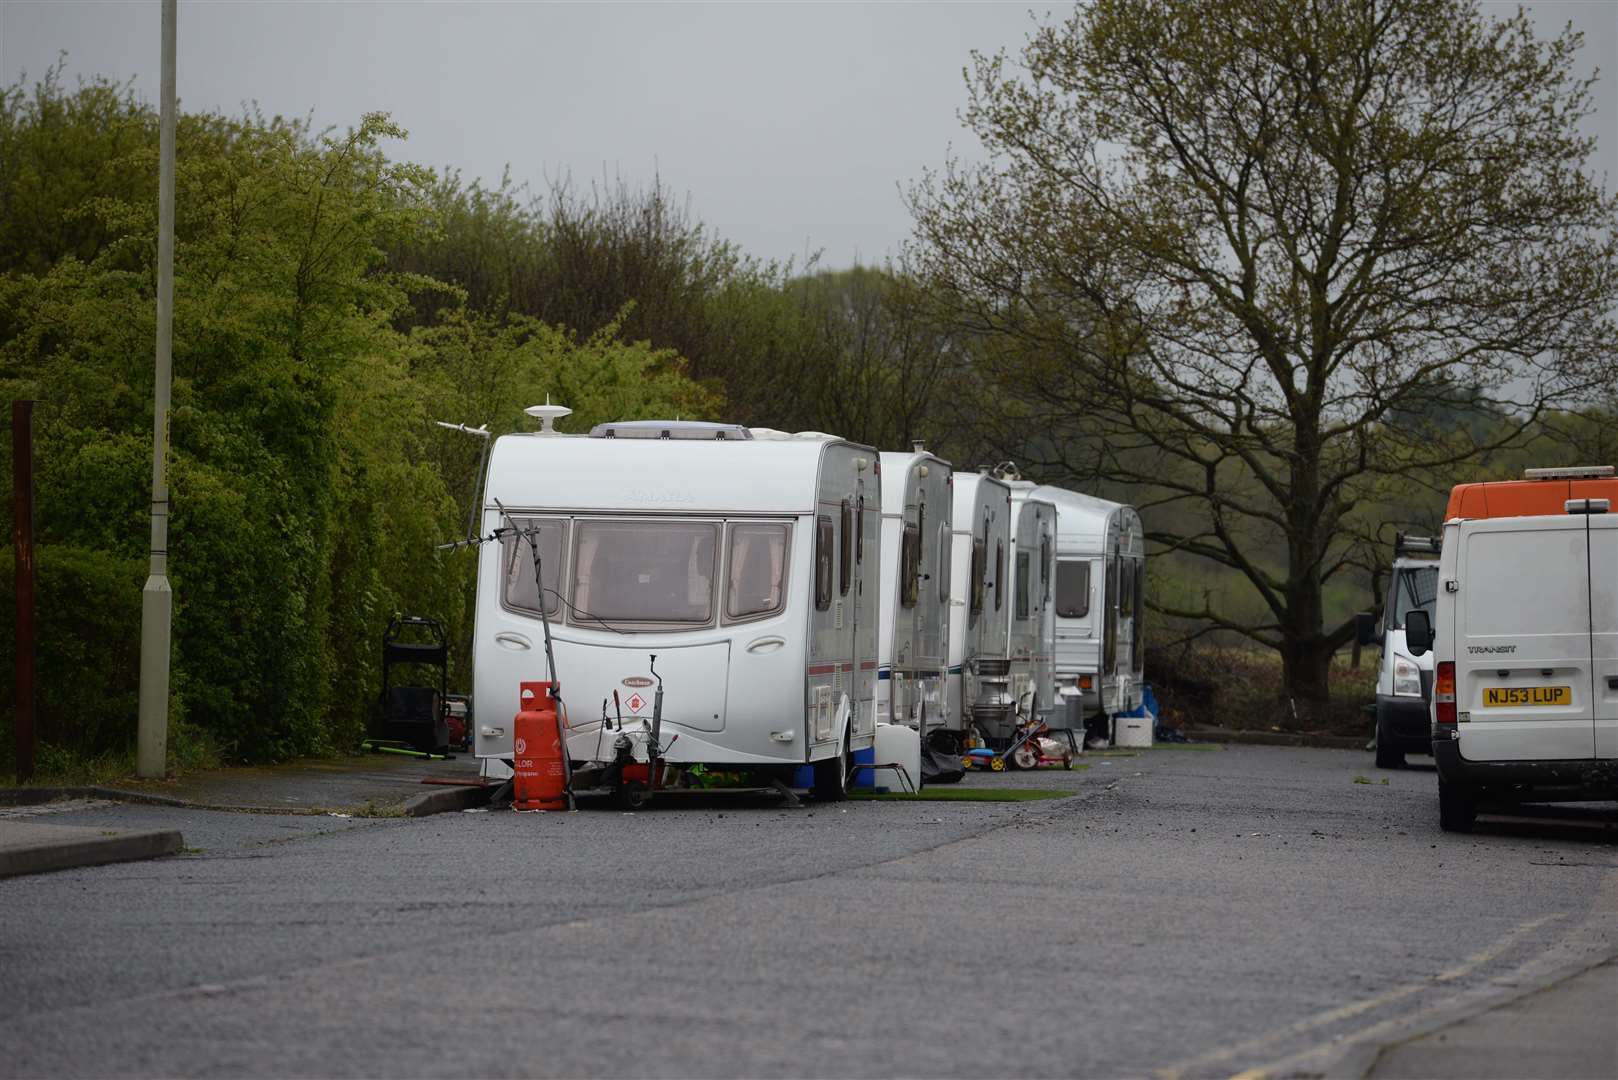 Travellers caravans parked in Reeves Way, Whitstable, last week